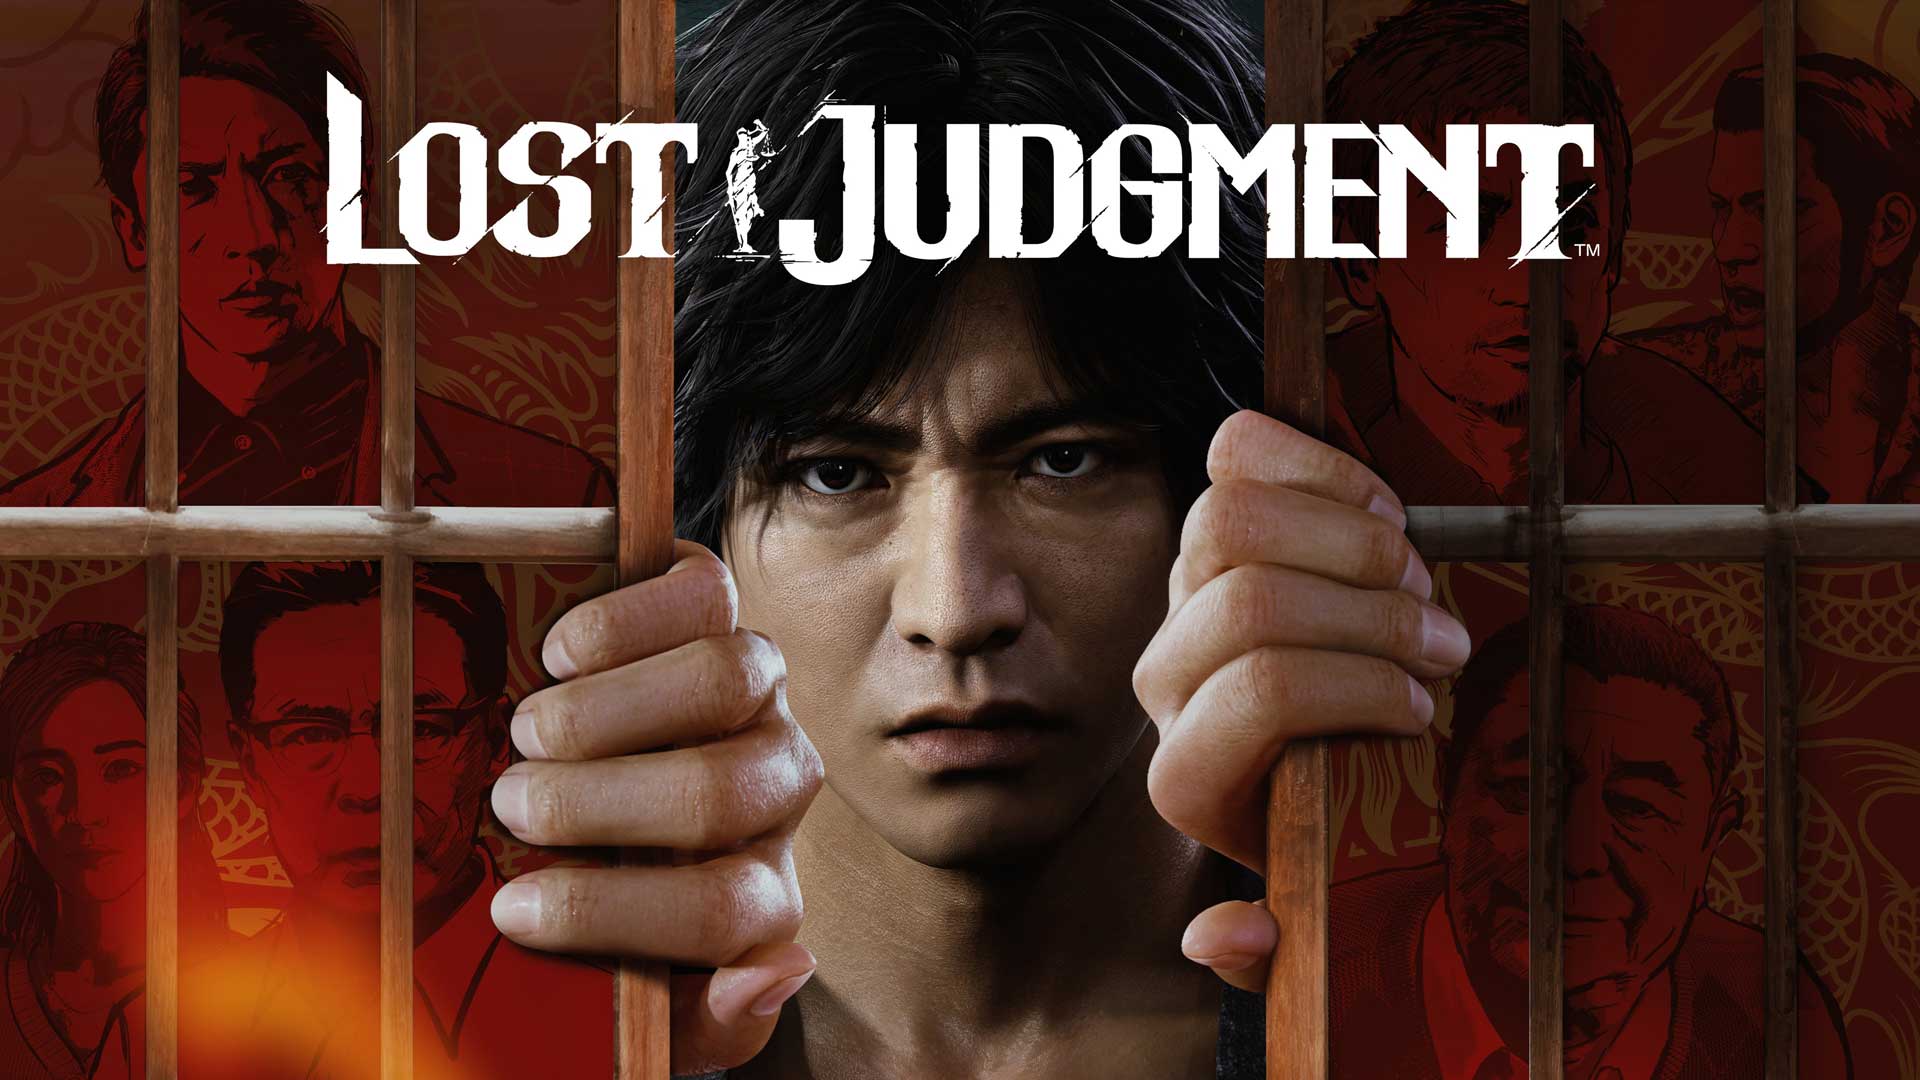 خرید بازی Lost Judgment برای PS5